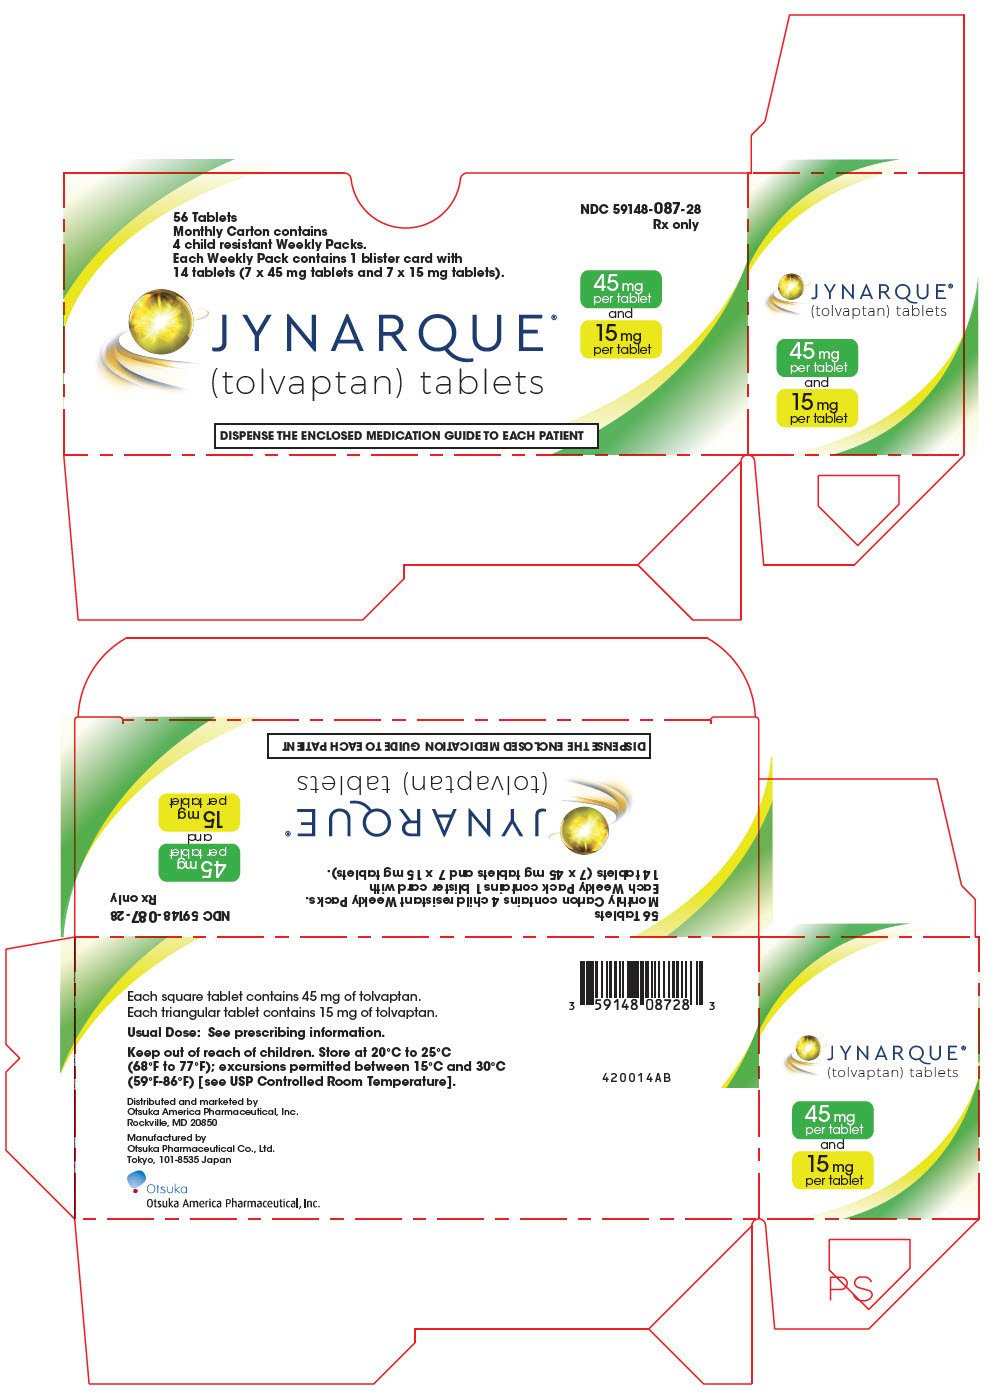 PRINCIPAL DISPLAY PANEL - Kit Carton - 45 mg and 15 mg